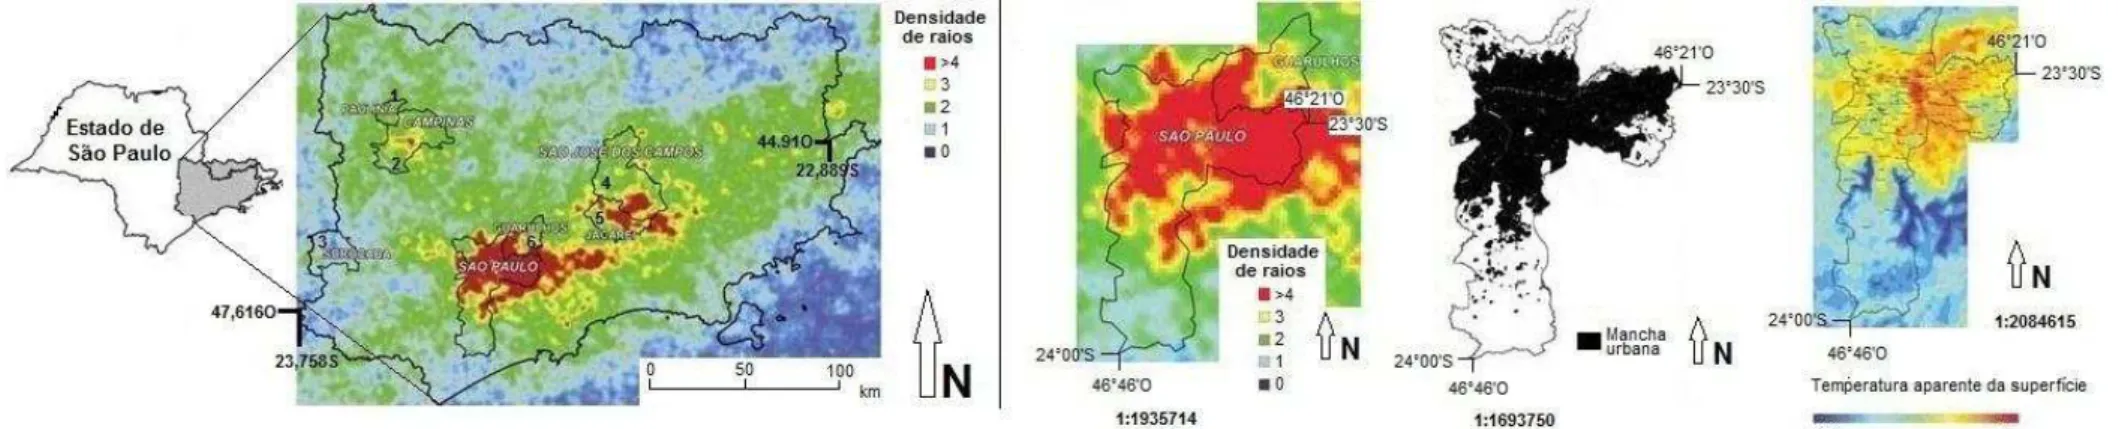 Figura 12  –  Unidades de temperaturas  da superfície da  Região  Metropolitana de São Paulo (RMSP) presentes no Município de São Paulo  (MSP)